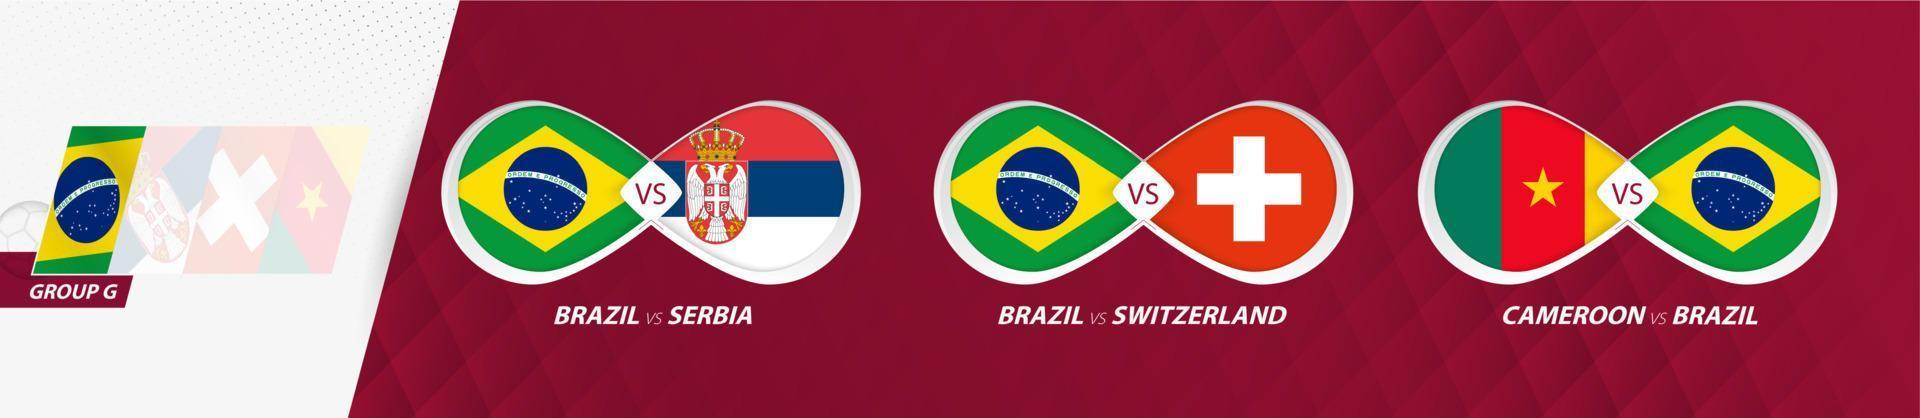 matchs de l'équipe nationale du brésil dans le groupe g, compétition de football 2022, icône de tous les jeux en phase de groupes. vecteur